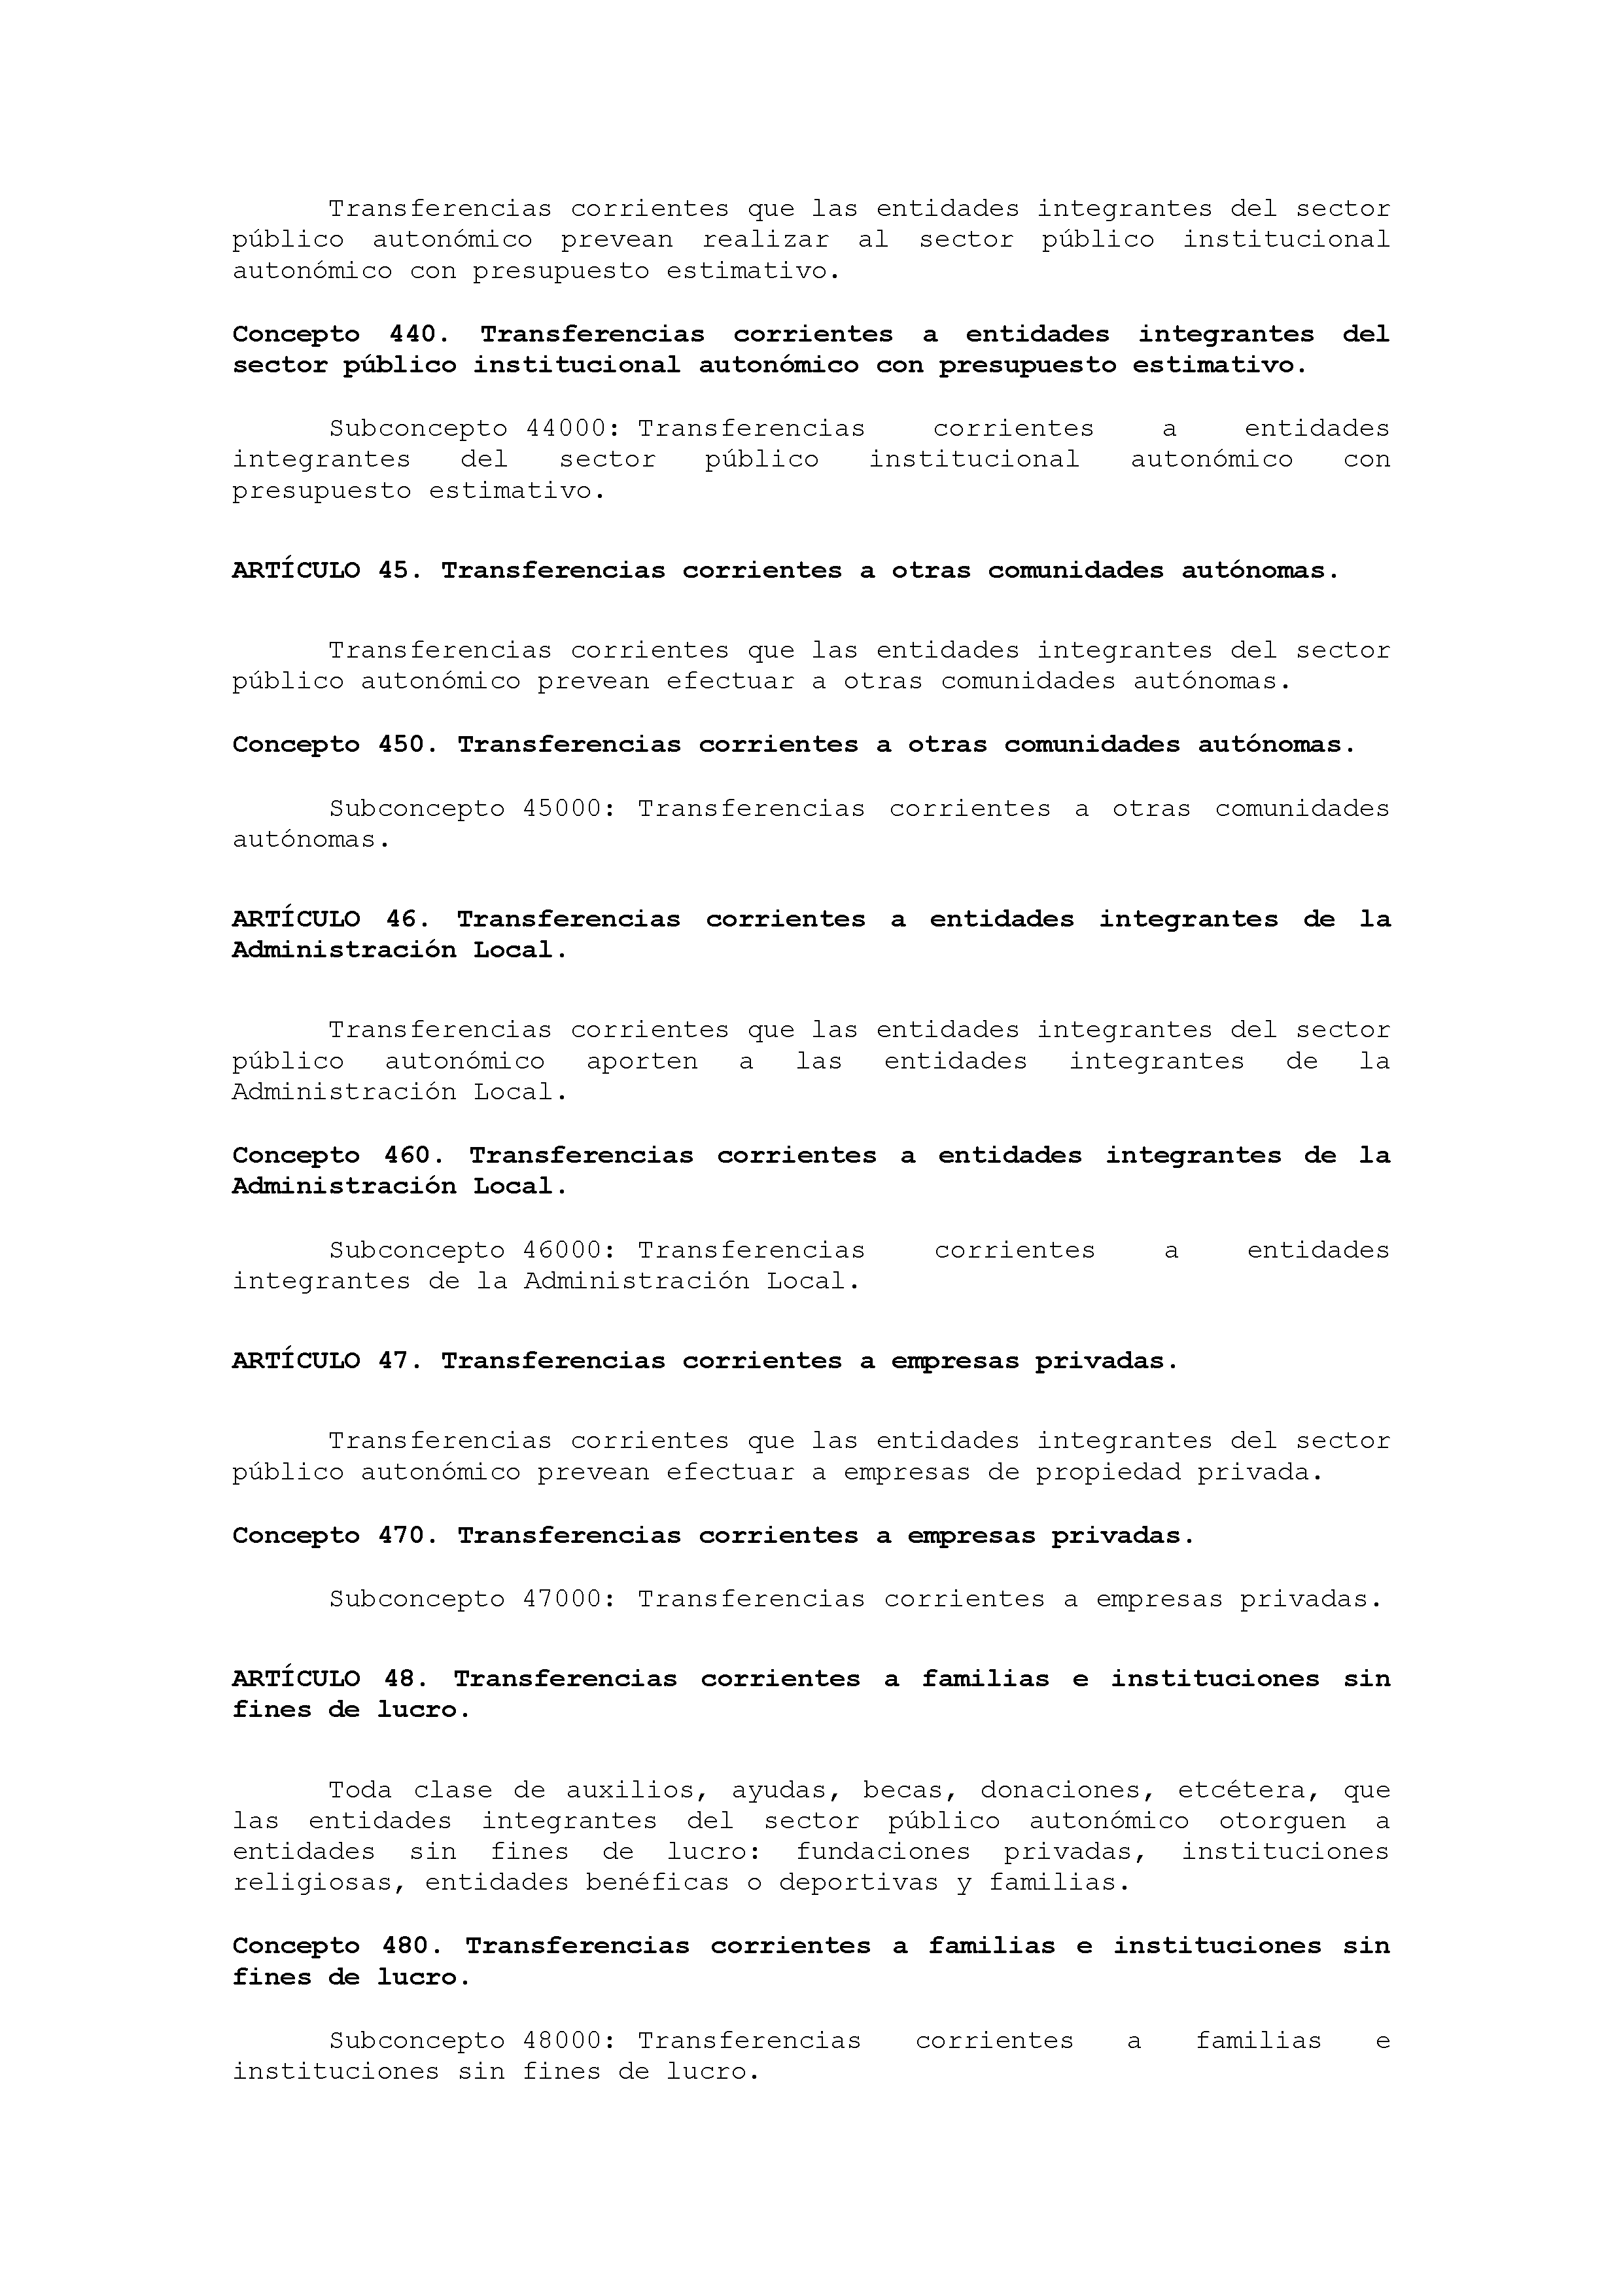 ANEXO IX CÓDIGO DE LA CLASIFICACIÓN ECONÓMICA DE LOS GASTOS PÚBLICOS Pag 33